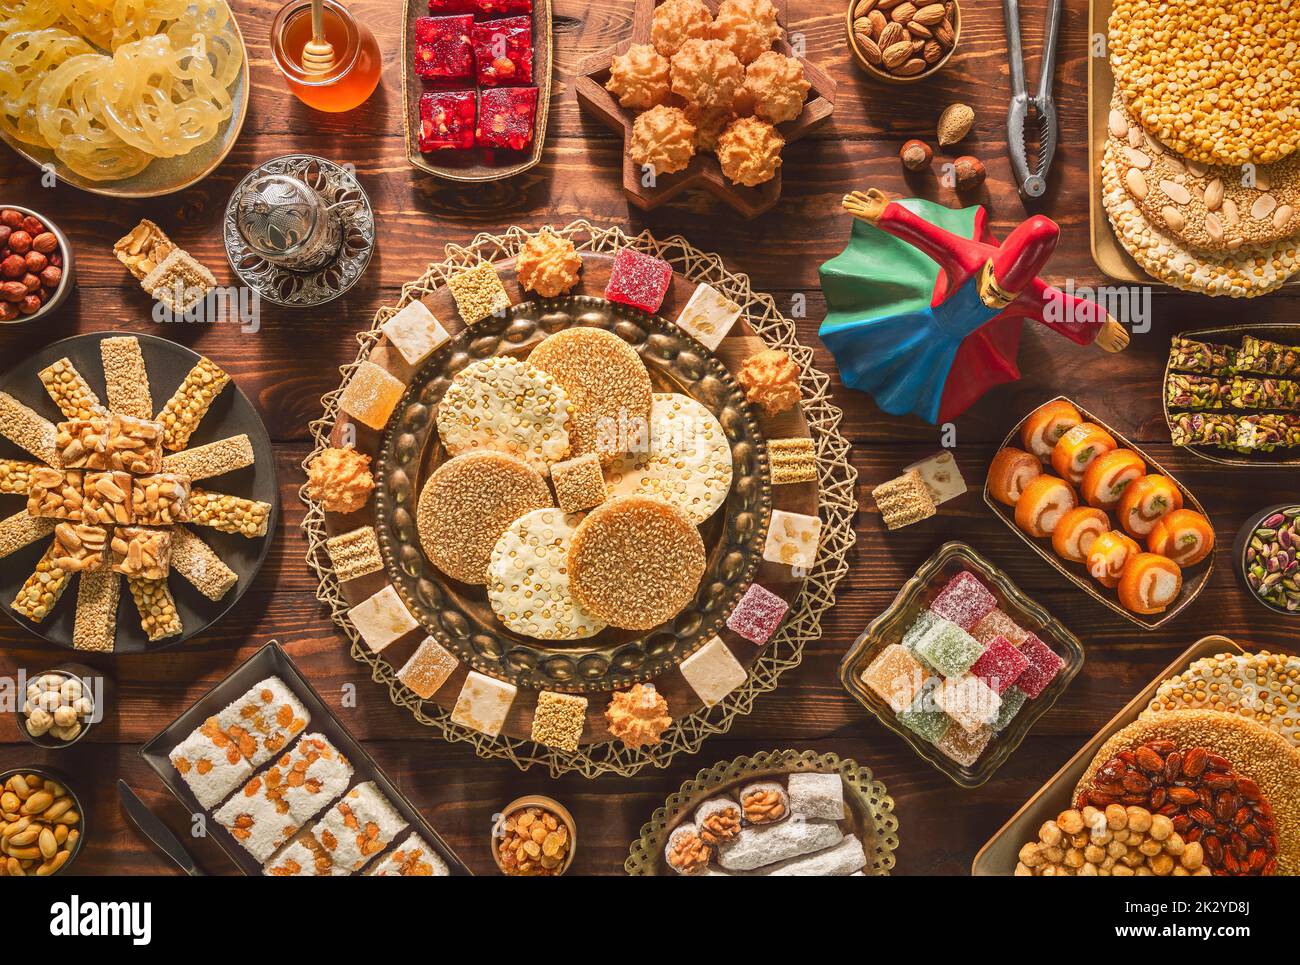 Collection de friandises et de bonbons arabes traditionnels pour célébrer l'anniversaire du prophète Mahomet. Variétés de sucreries égyptiennes de Mawlid. Banque D'Images